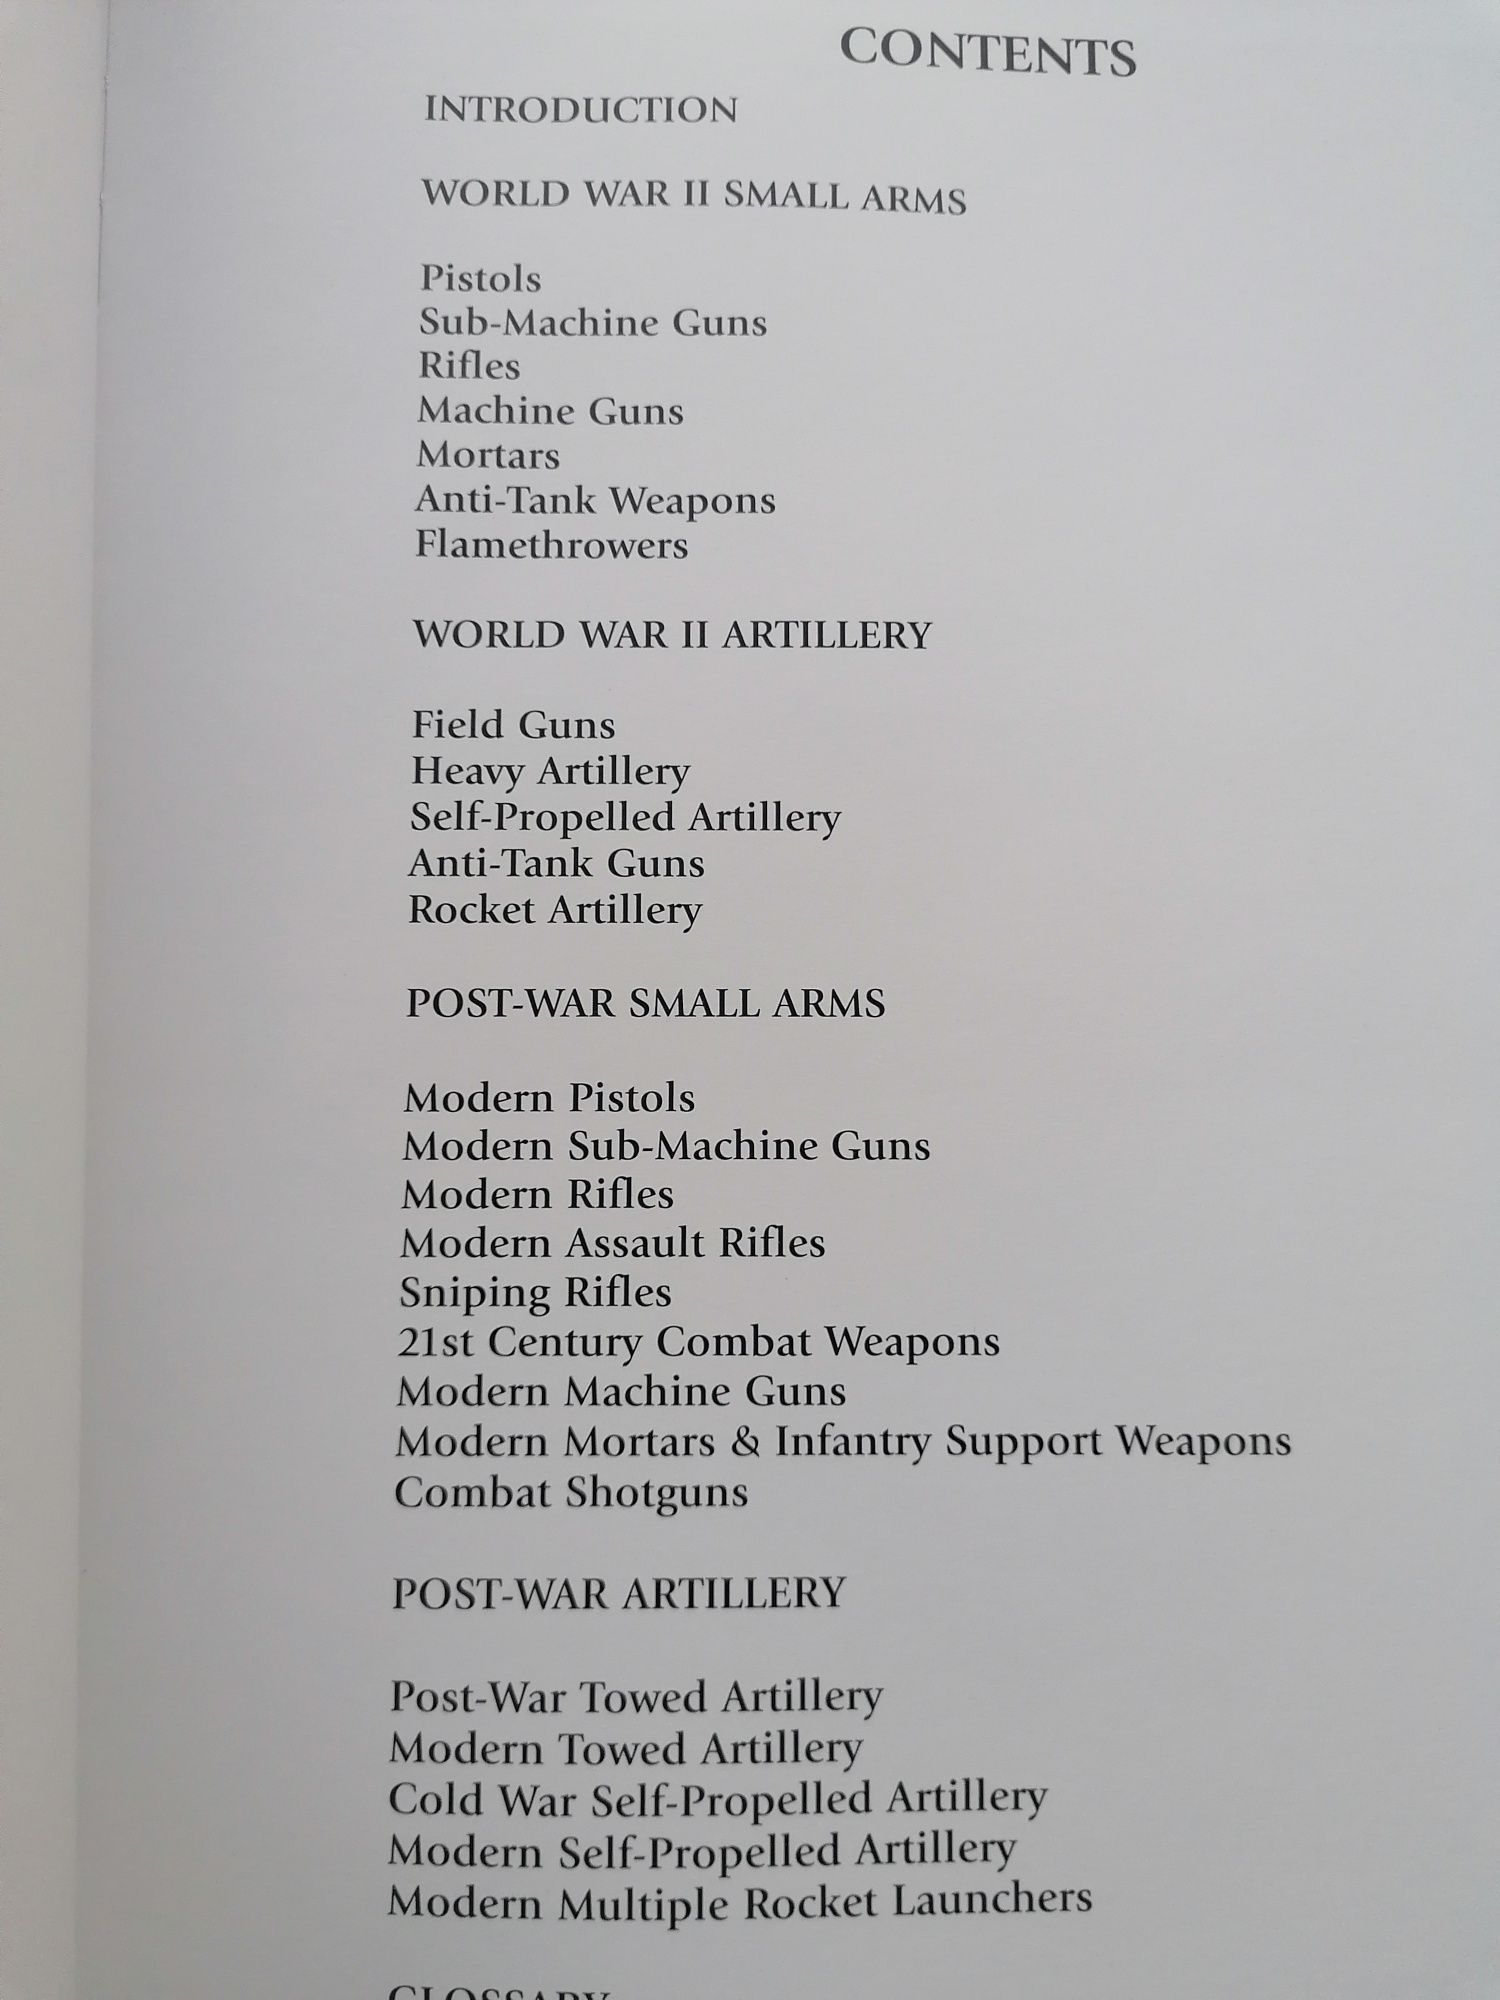 Livro de armas e artilharia